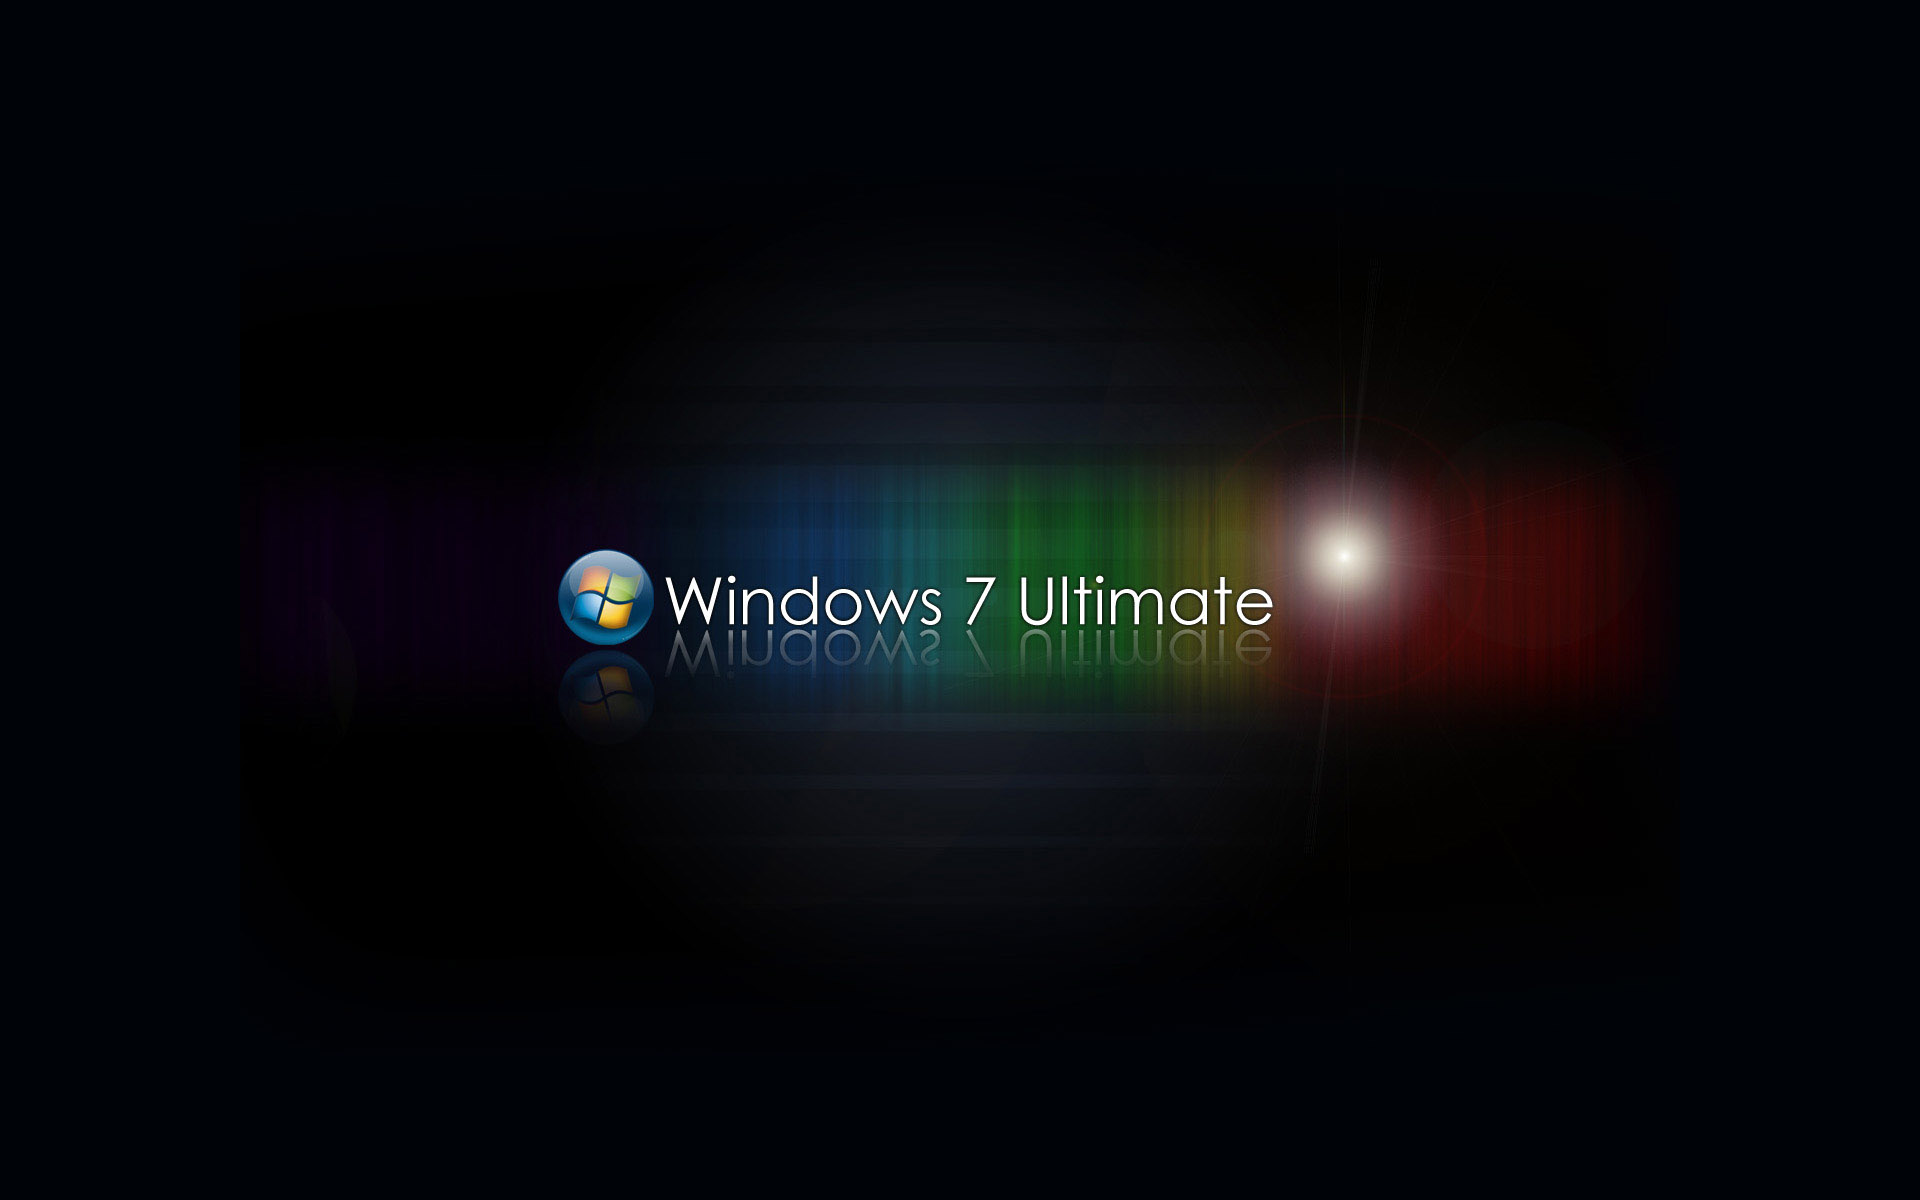 Los mejores fondos de pantalla de Windows 7 Ultimate para la pantalla del teléfono